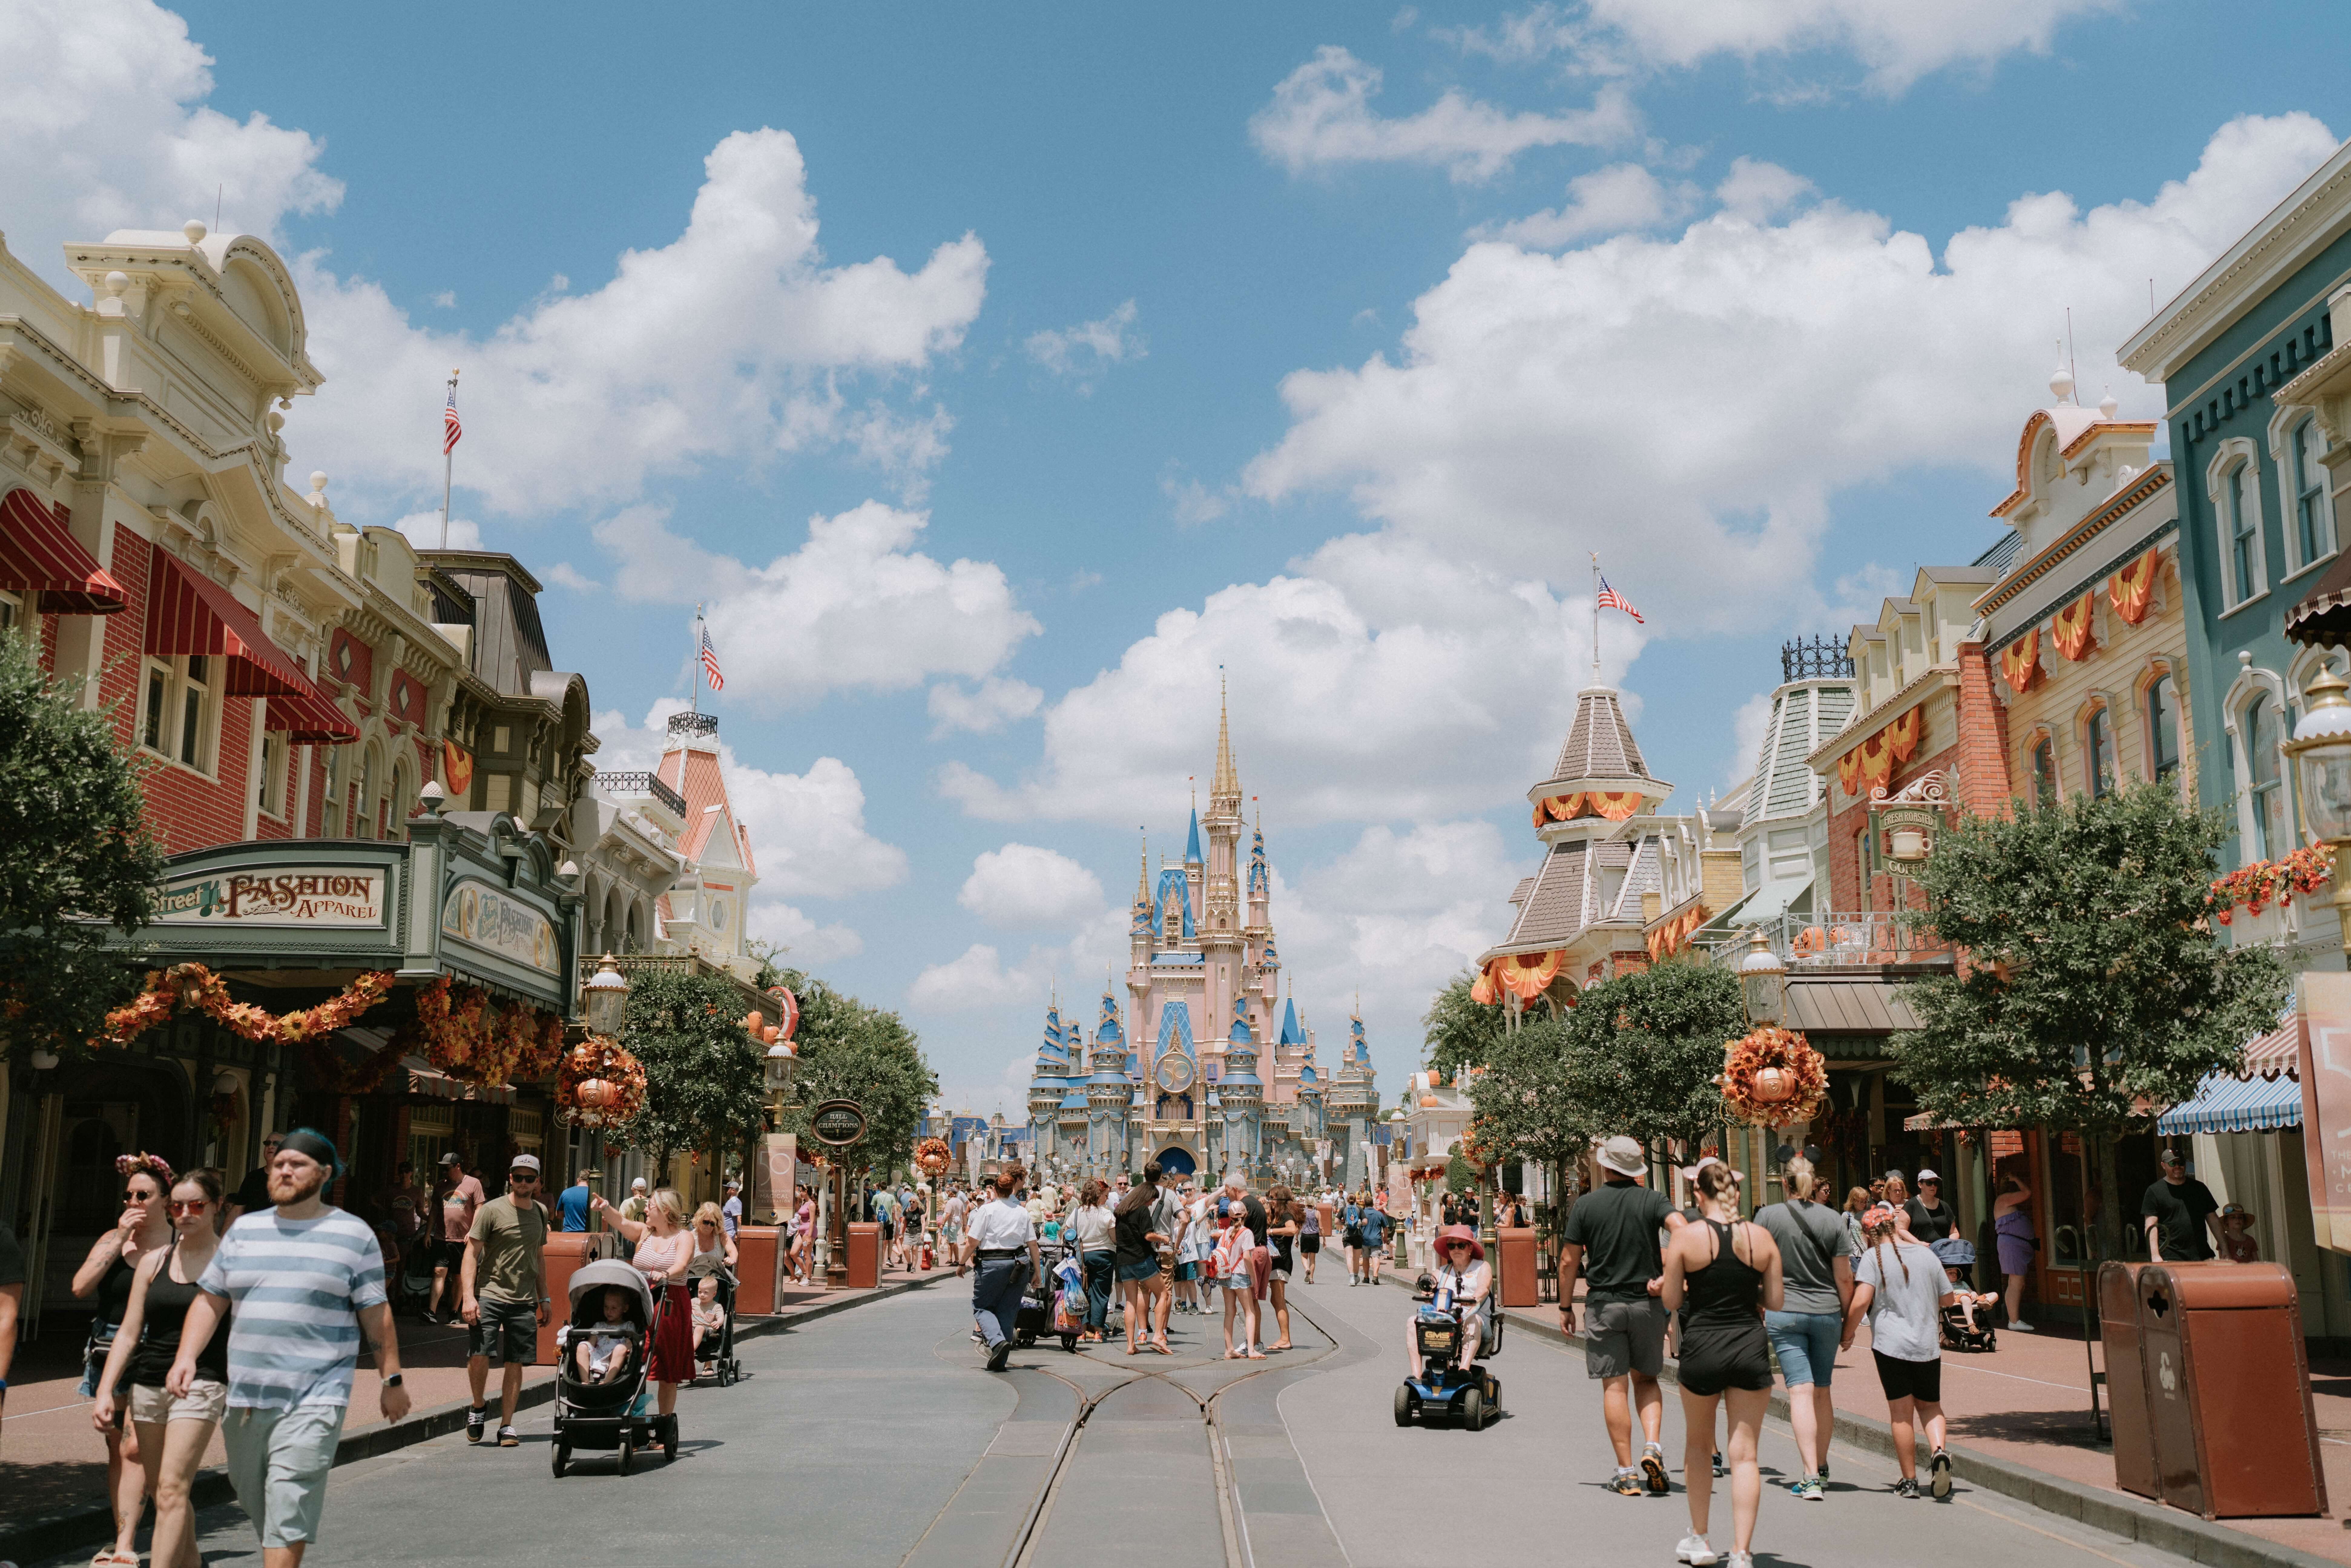 Castelo da Disney em Orlando decorado com abóboras cintilantes.